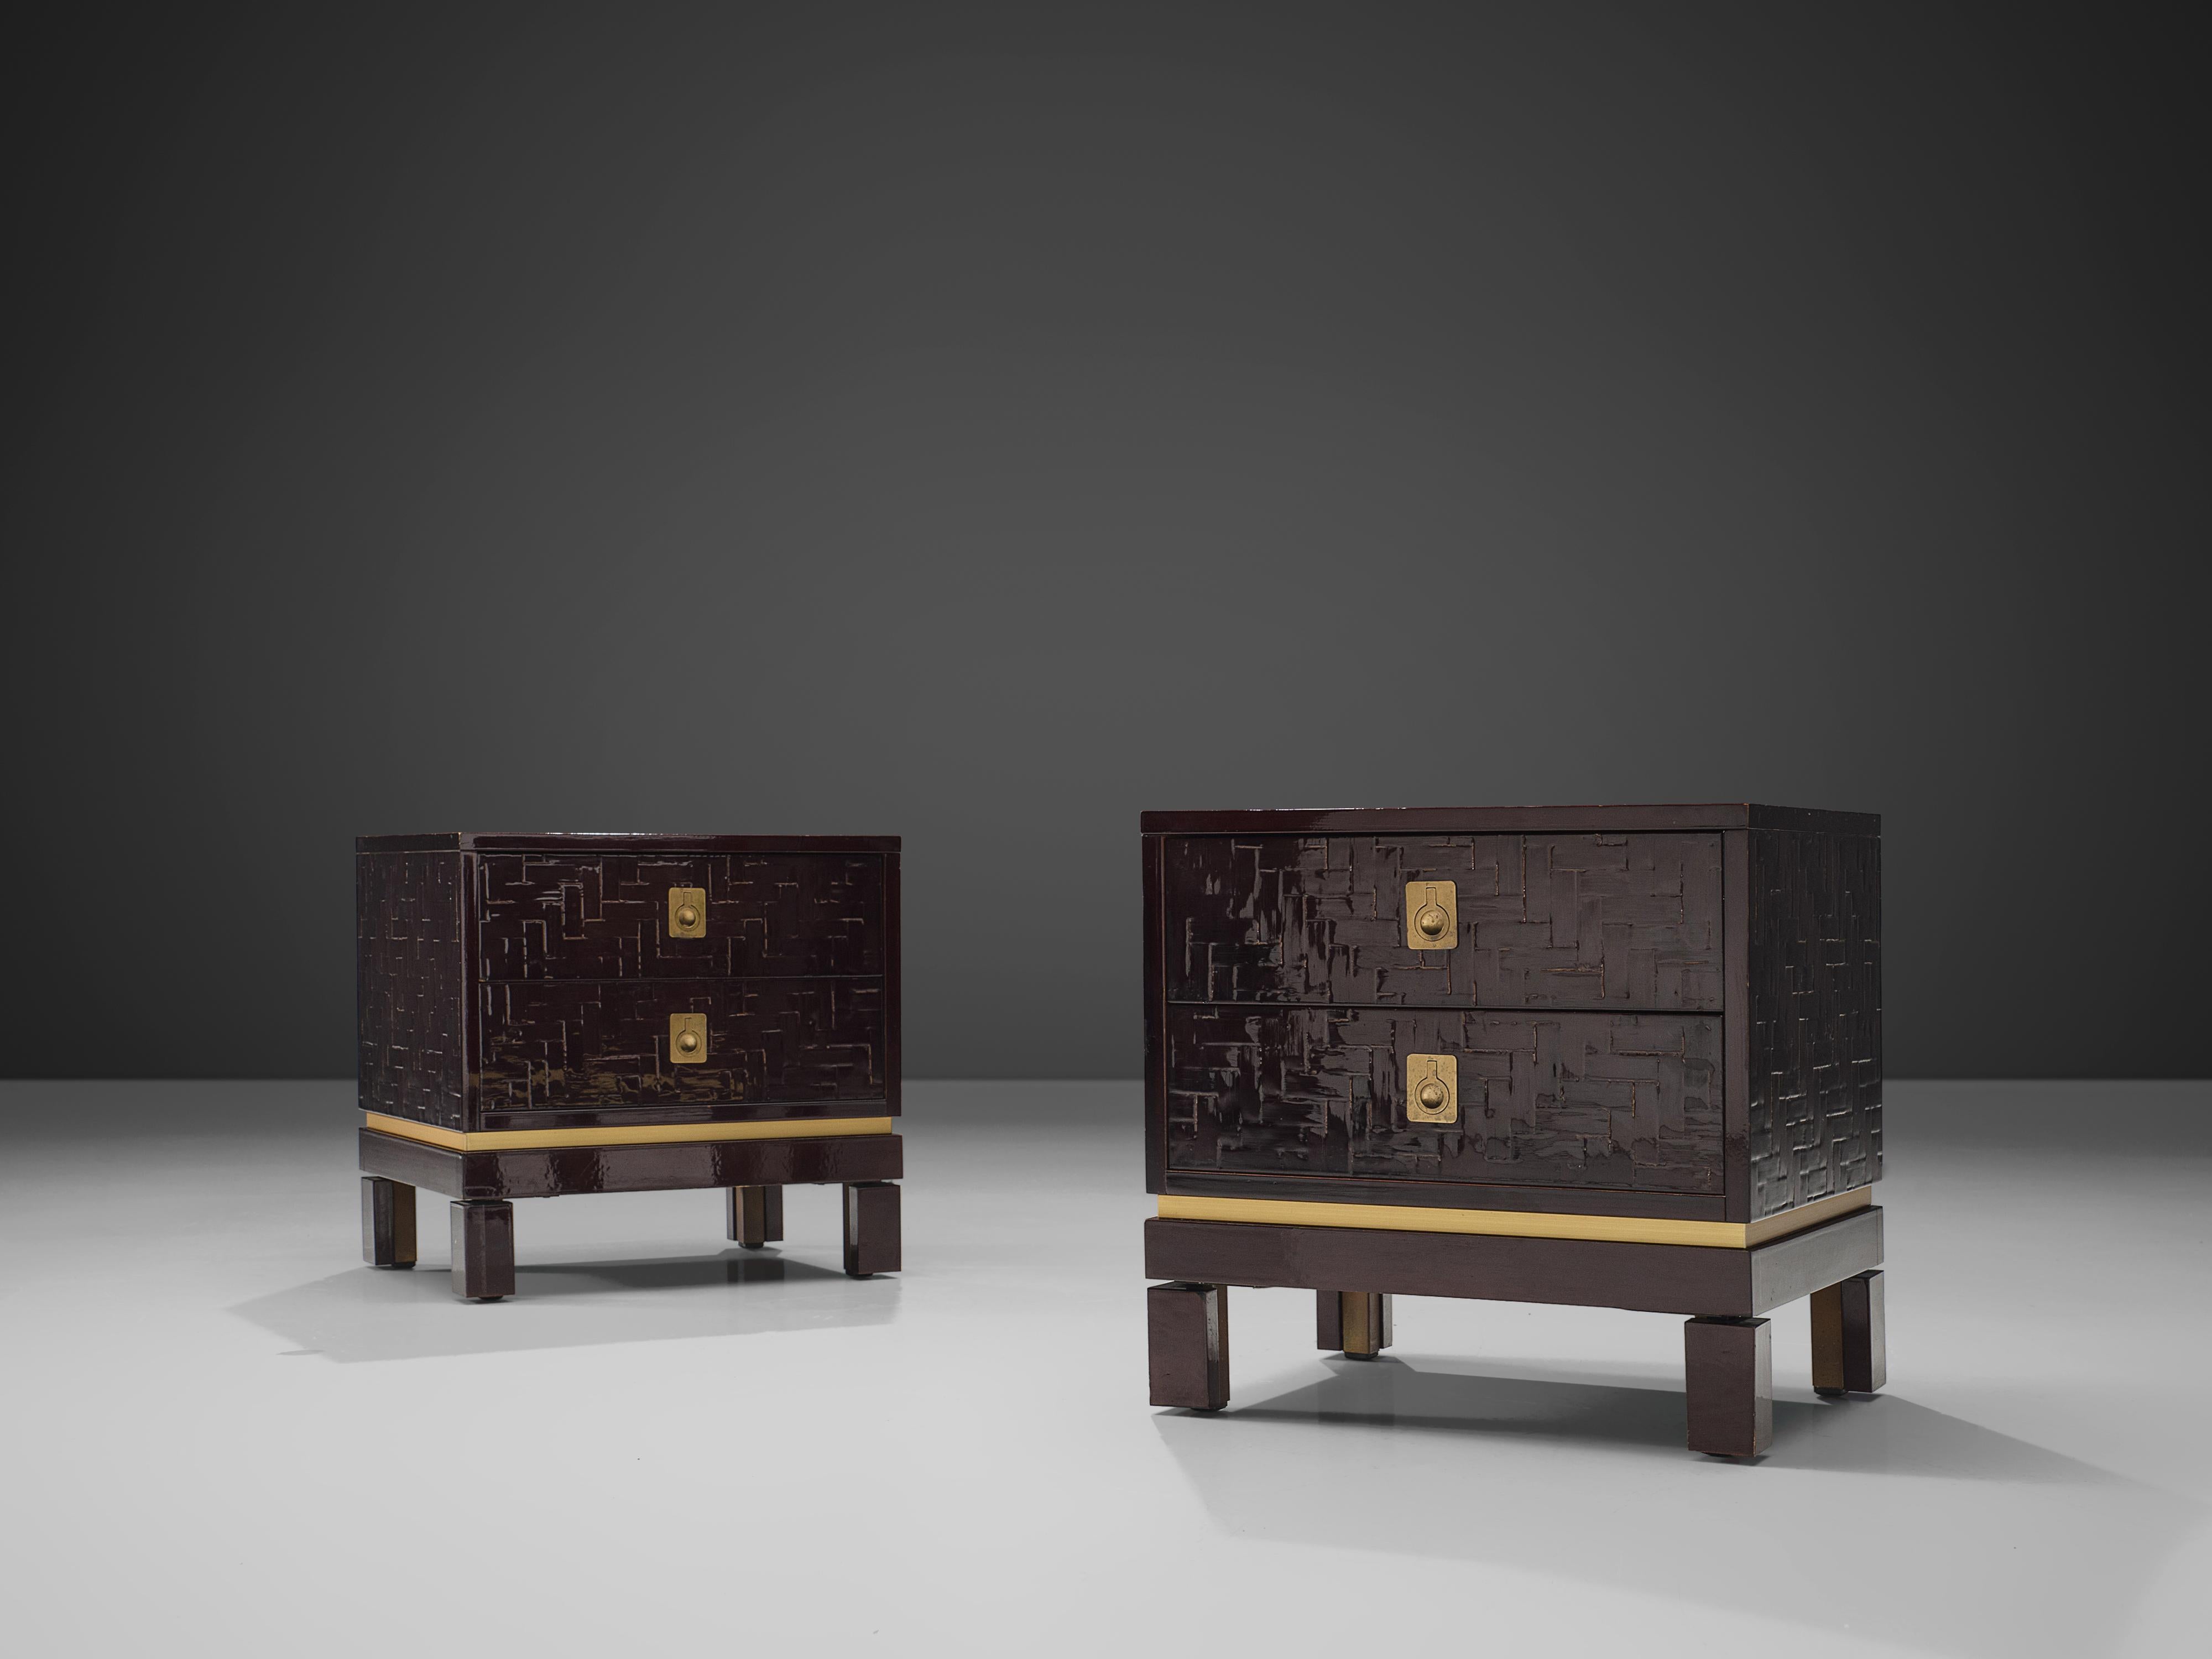 Paire de tables de nuit, bois laqué, laiton, Europe, années 1960.

Ces deux charmantes tables de nuit marron foncé convainquent par leur surface texturée combinée à des détails en laiton. La forme cubique est structurée par deux tiroirs. Avec leur